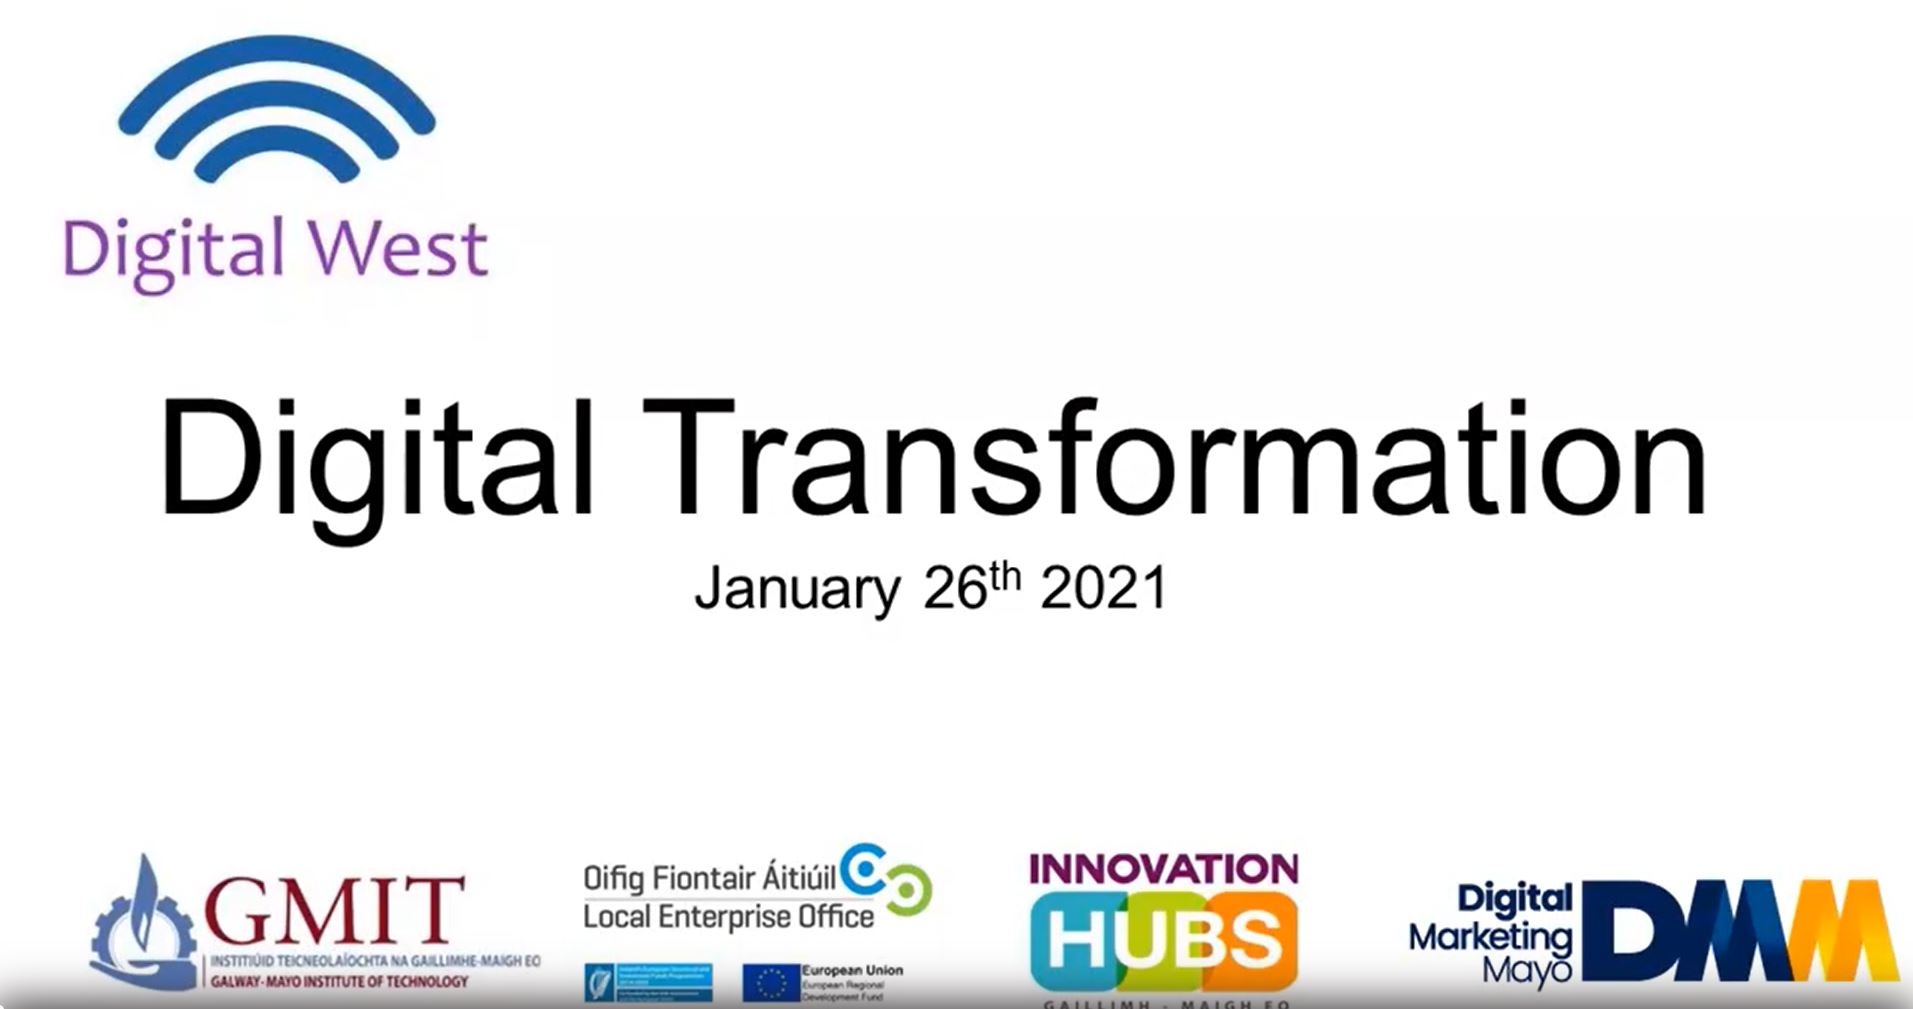 Digital Transformation 2021 Digital West